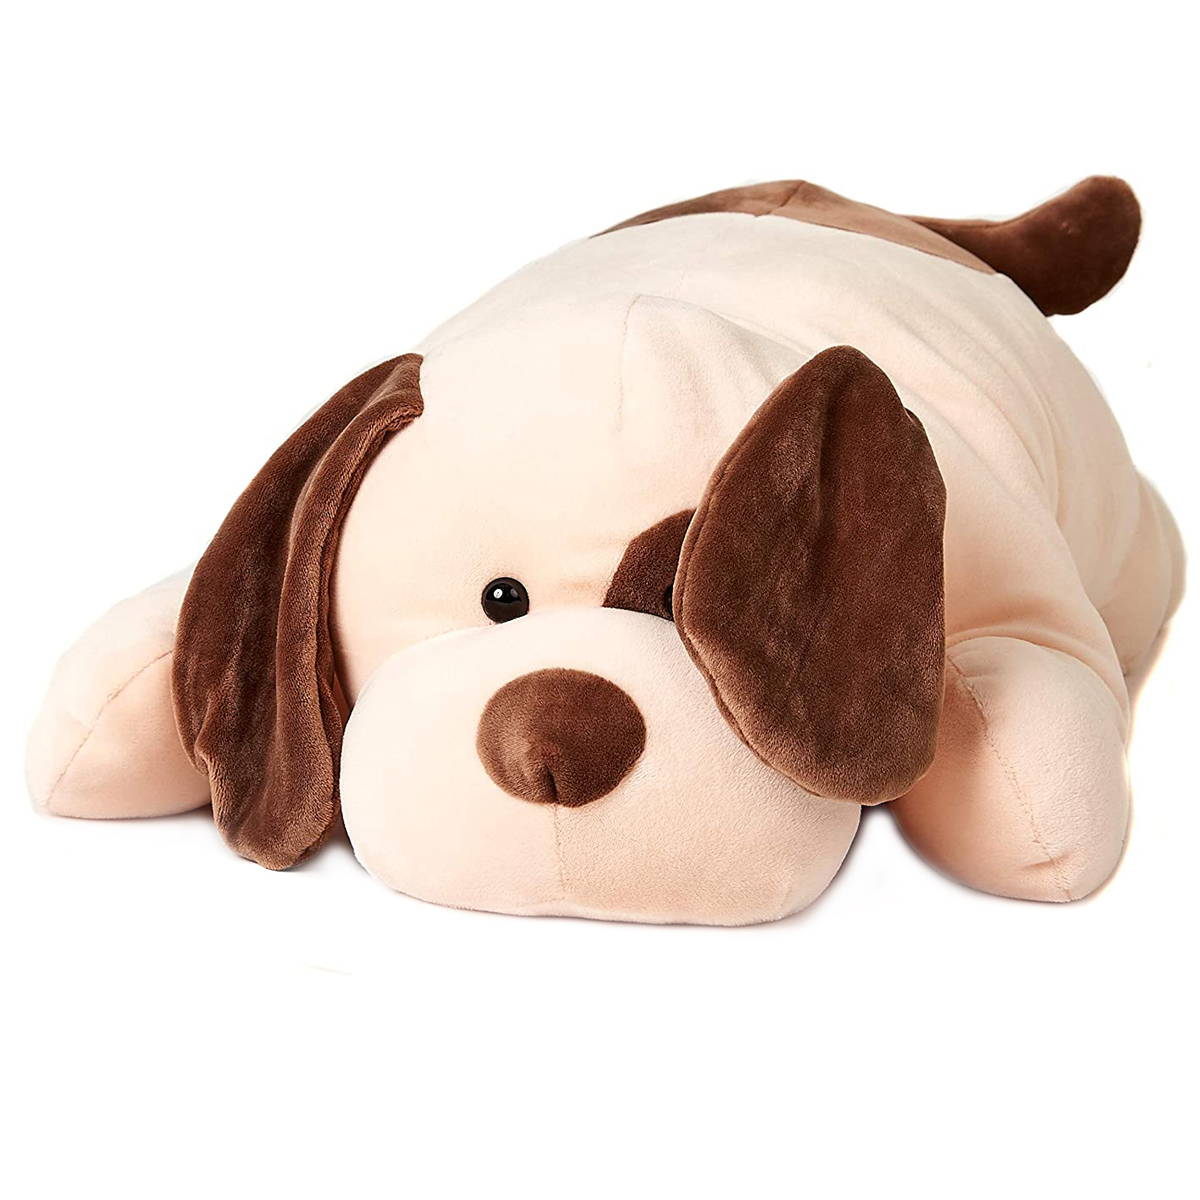 Uni-Toys - Kissen Plüsch-Hund (braun-beige), ultraweich - 60 cm (Länge) - Plüschtier, Kuscheltier